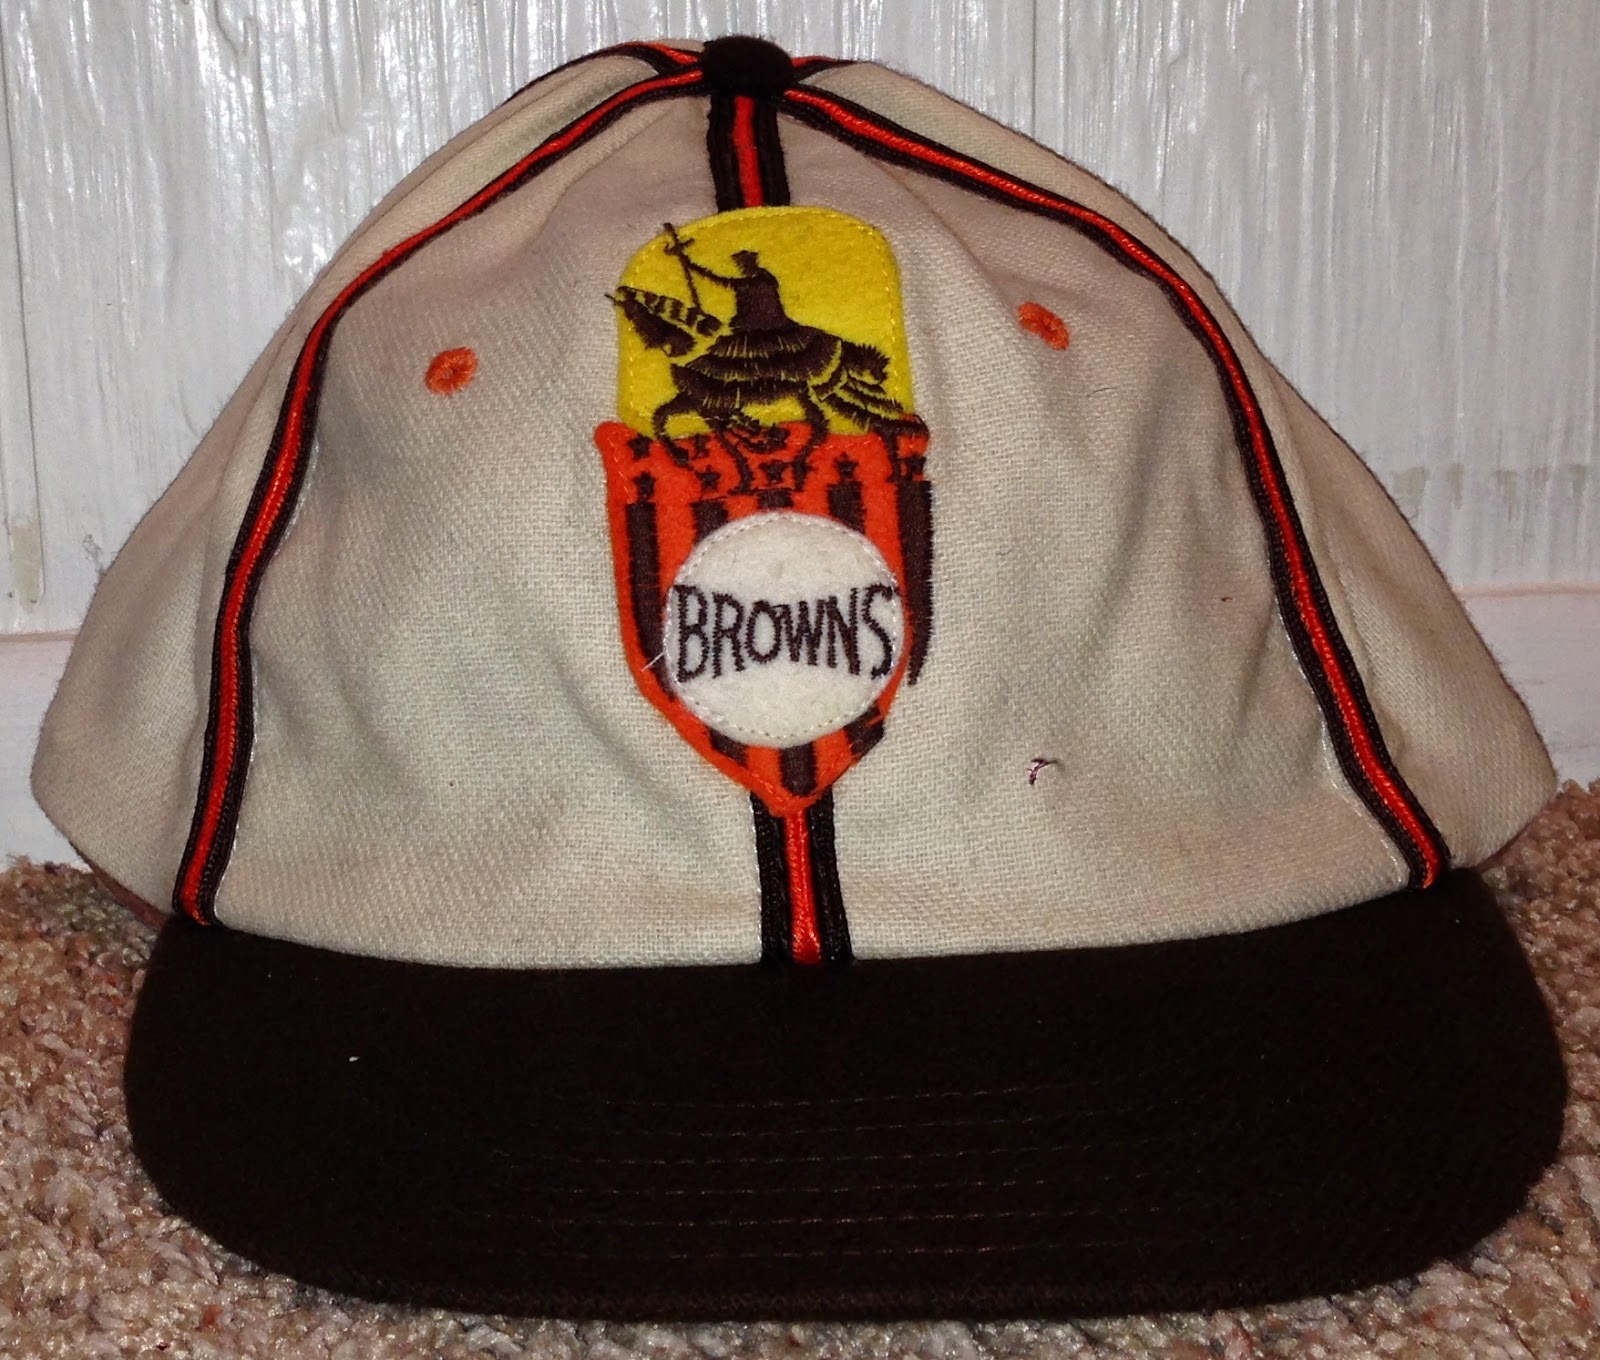 Cooperstown Ball Cap Co. Caps: 1938 St. Louis Brown's Uniform Patch Cap